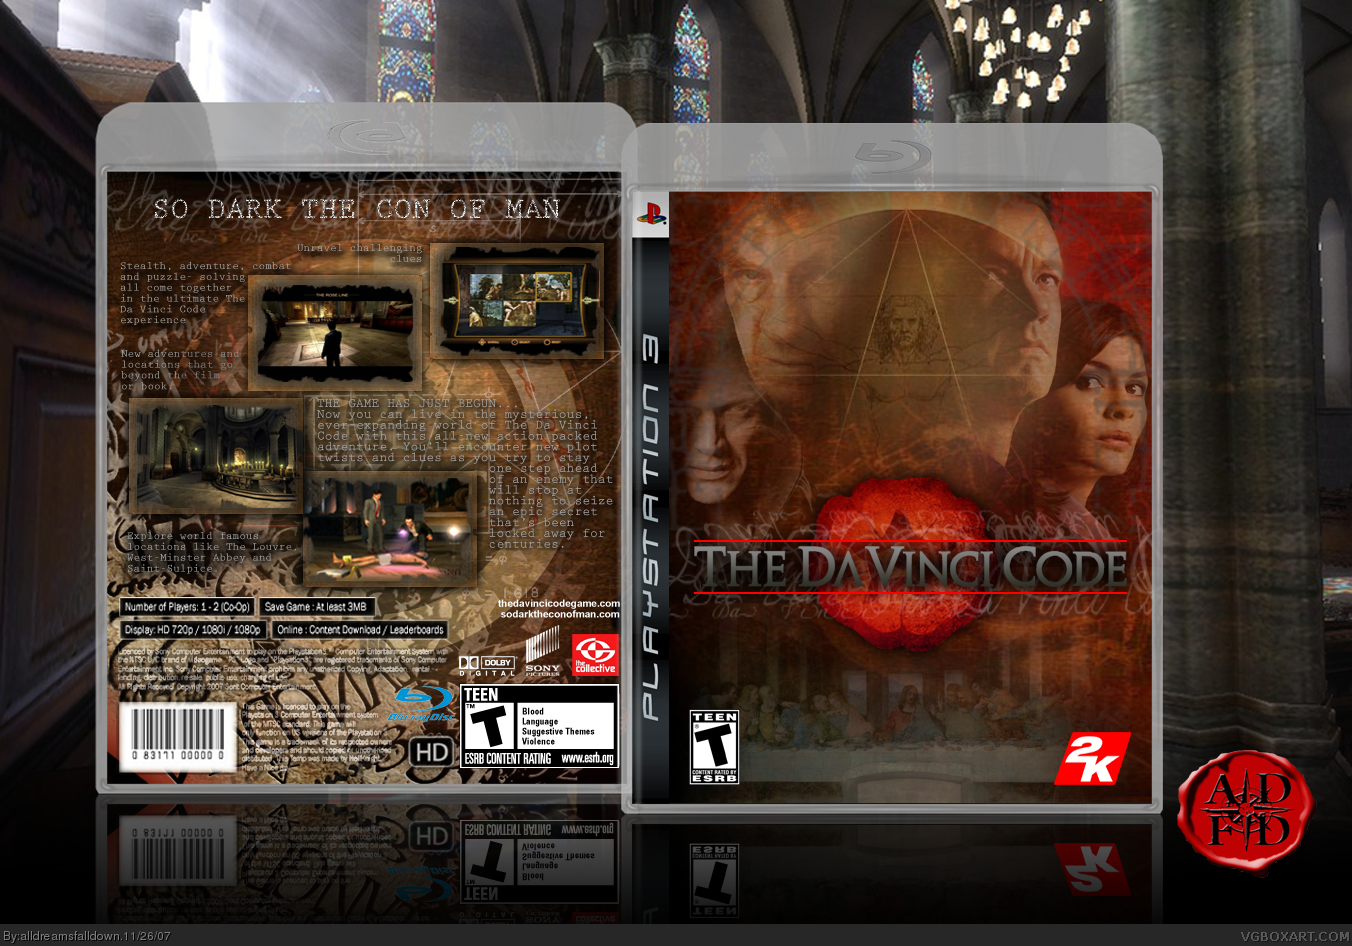 The Da Vinci Code box cover